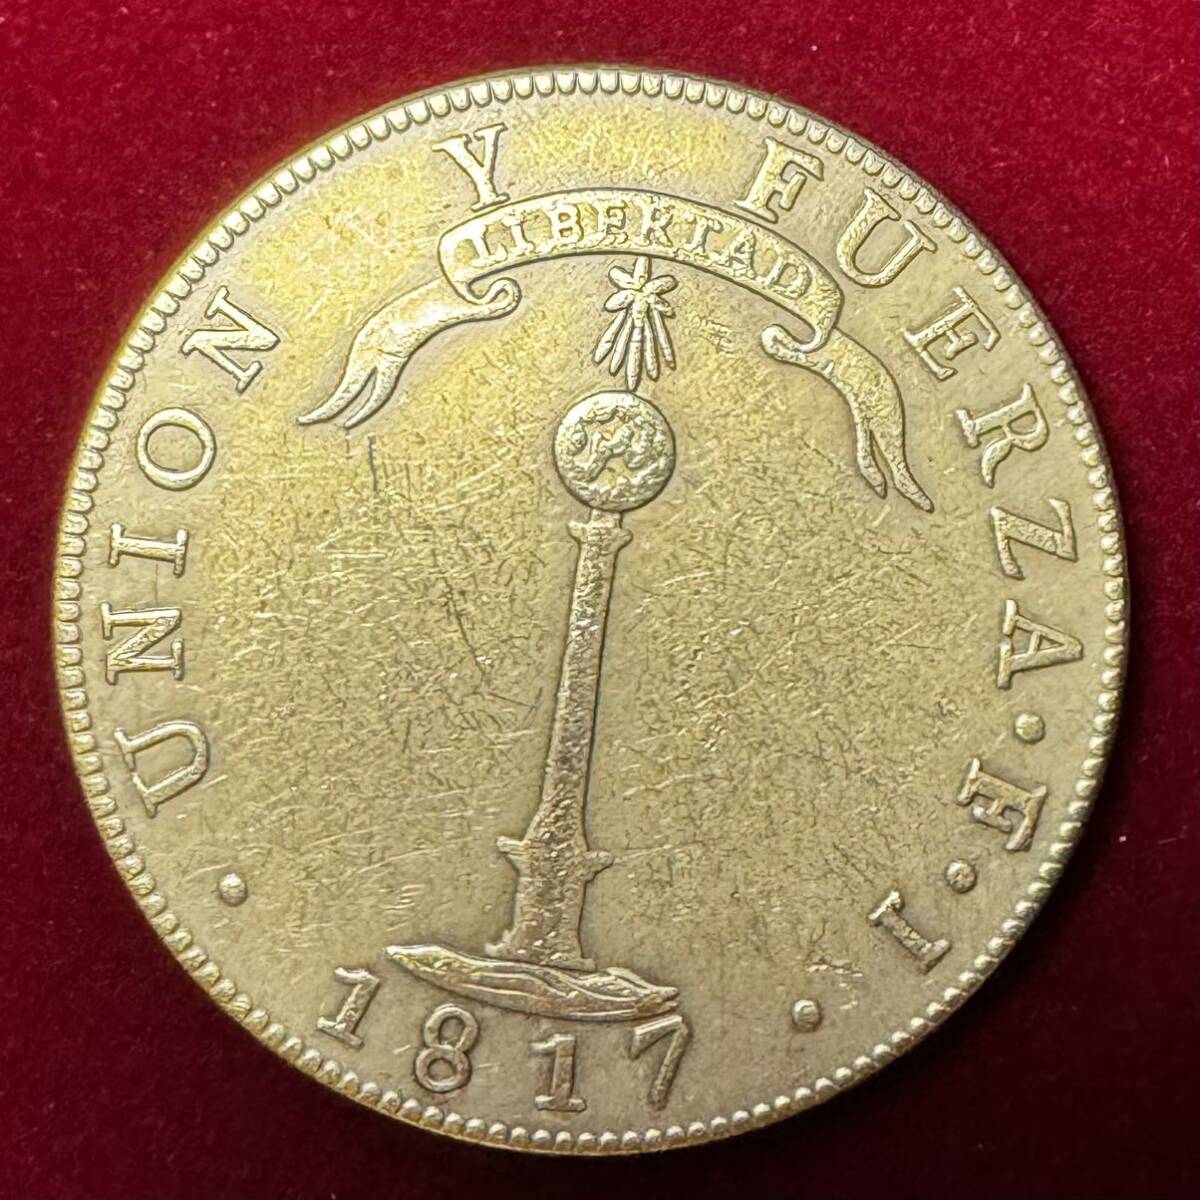 チリ 硬貨 古銭 チリ独立 1817年 サンティアゴ 火山 噴火 柱 国連ペソ コイン 外国古銭 海外硬貨 の画像2